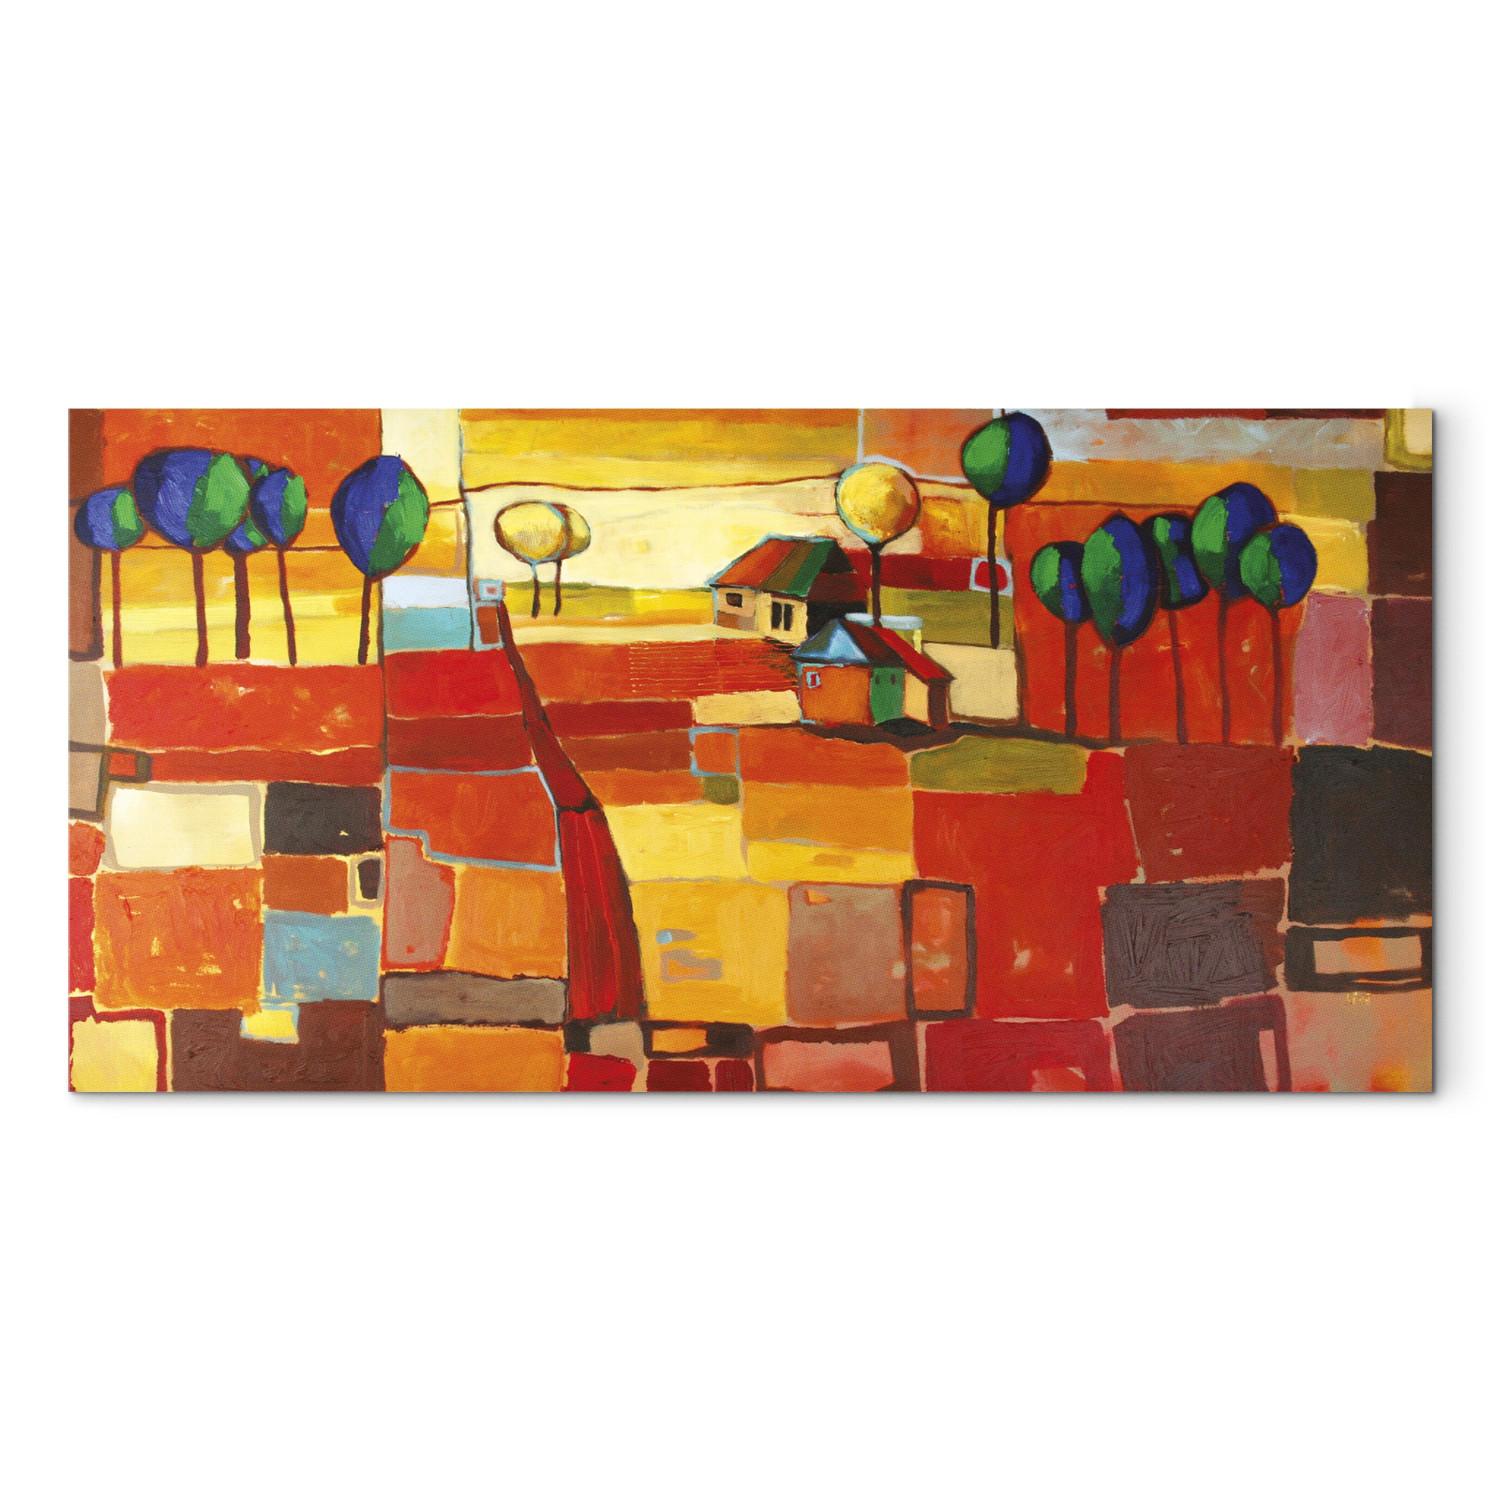 Cuadro Campos arcoiris (1 pieza) - paisaje abstracto y colorido con árboles